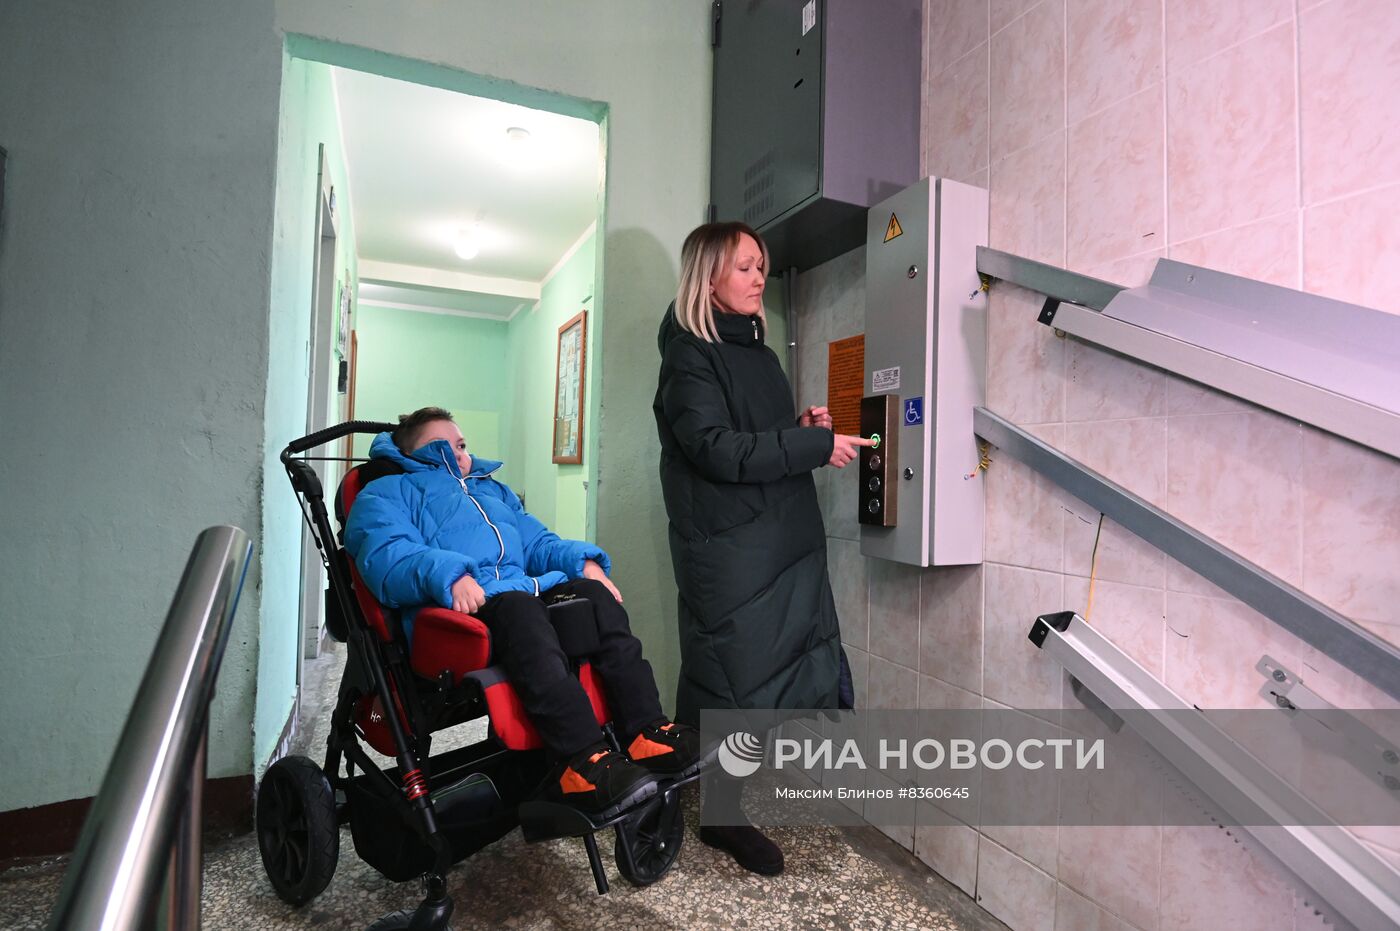 Подъемная платформа для людей с ограниченными возможностями здоровья в Москве